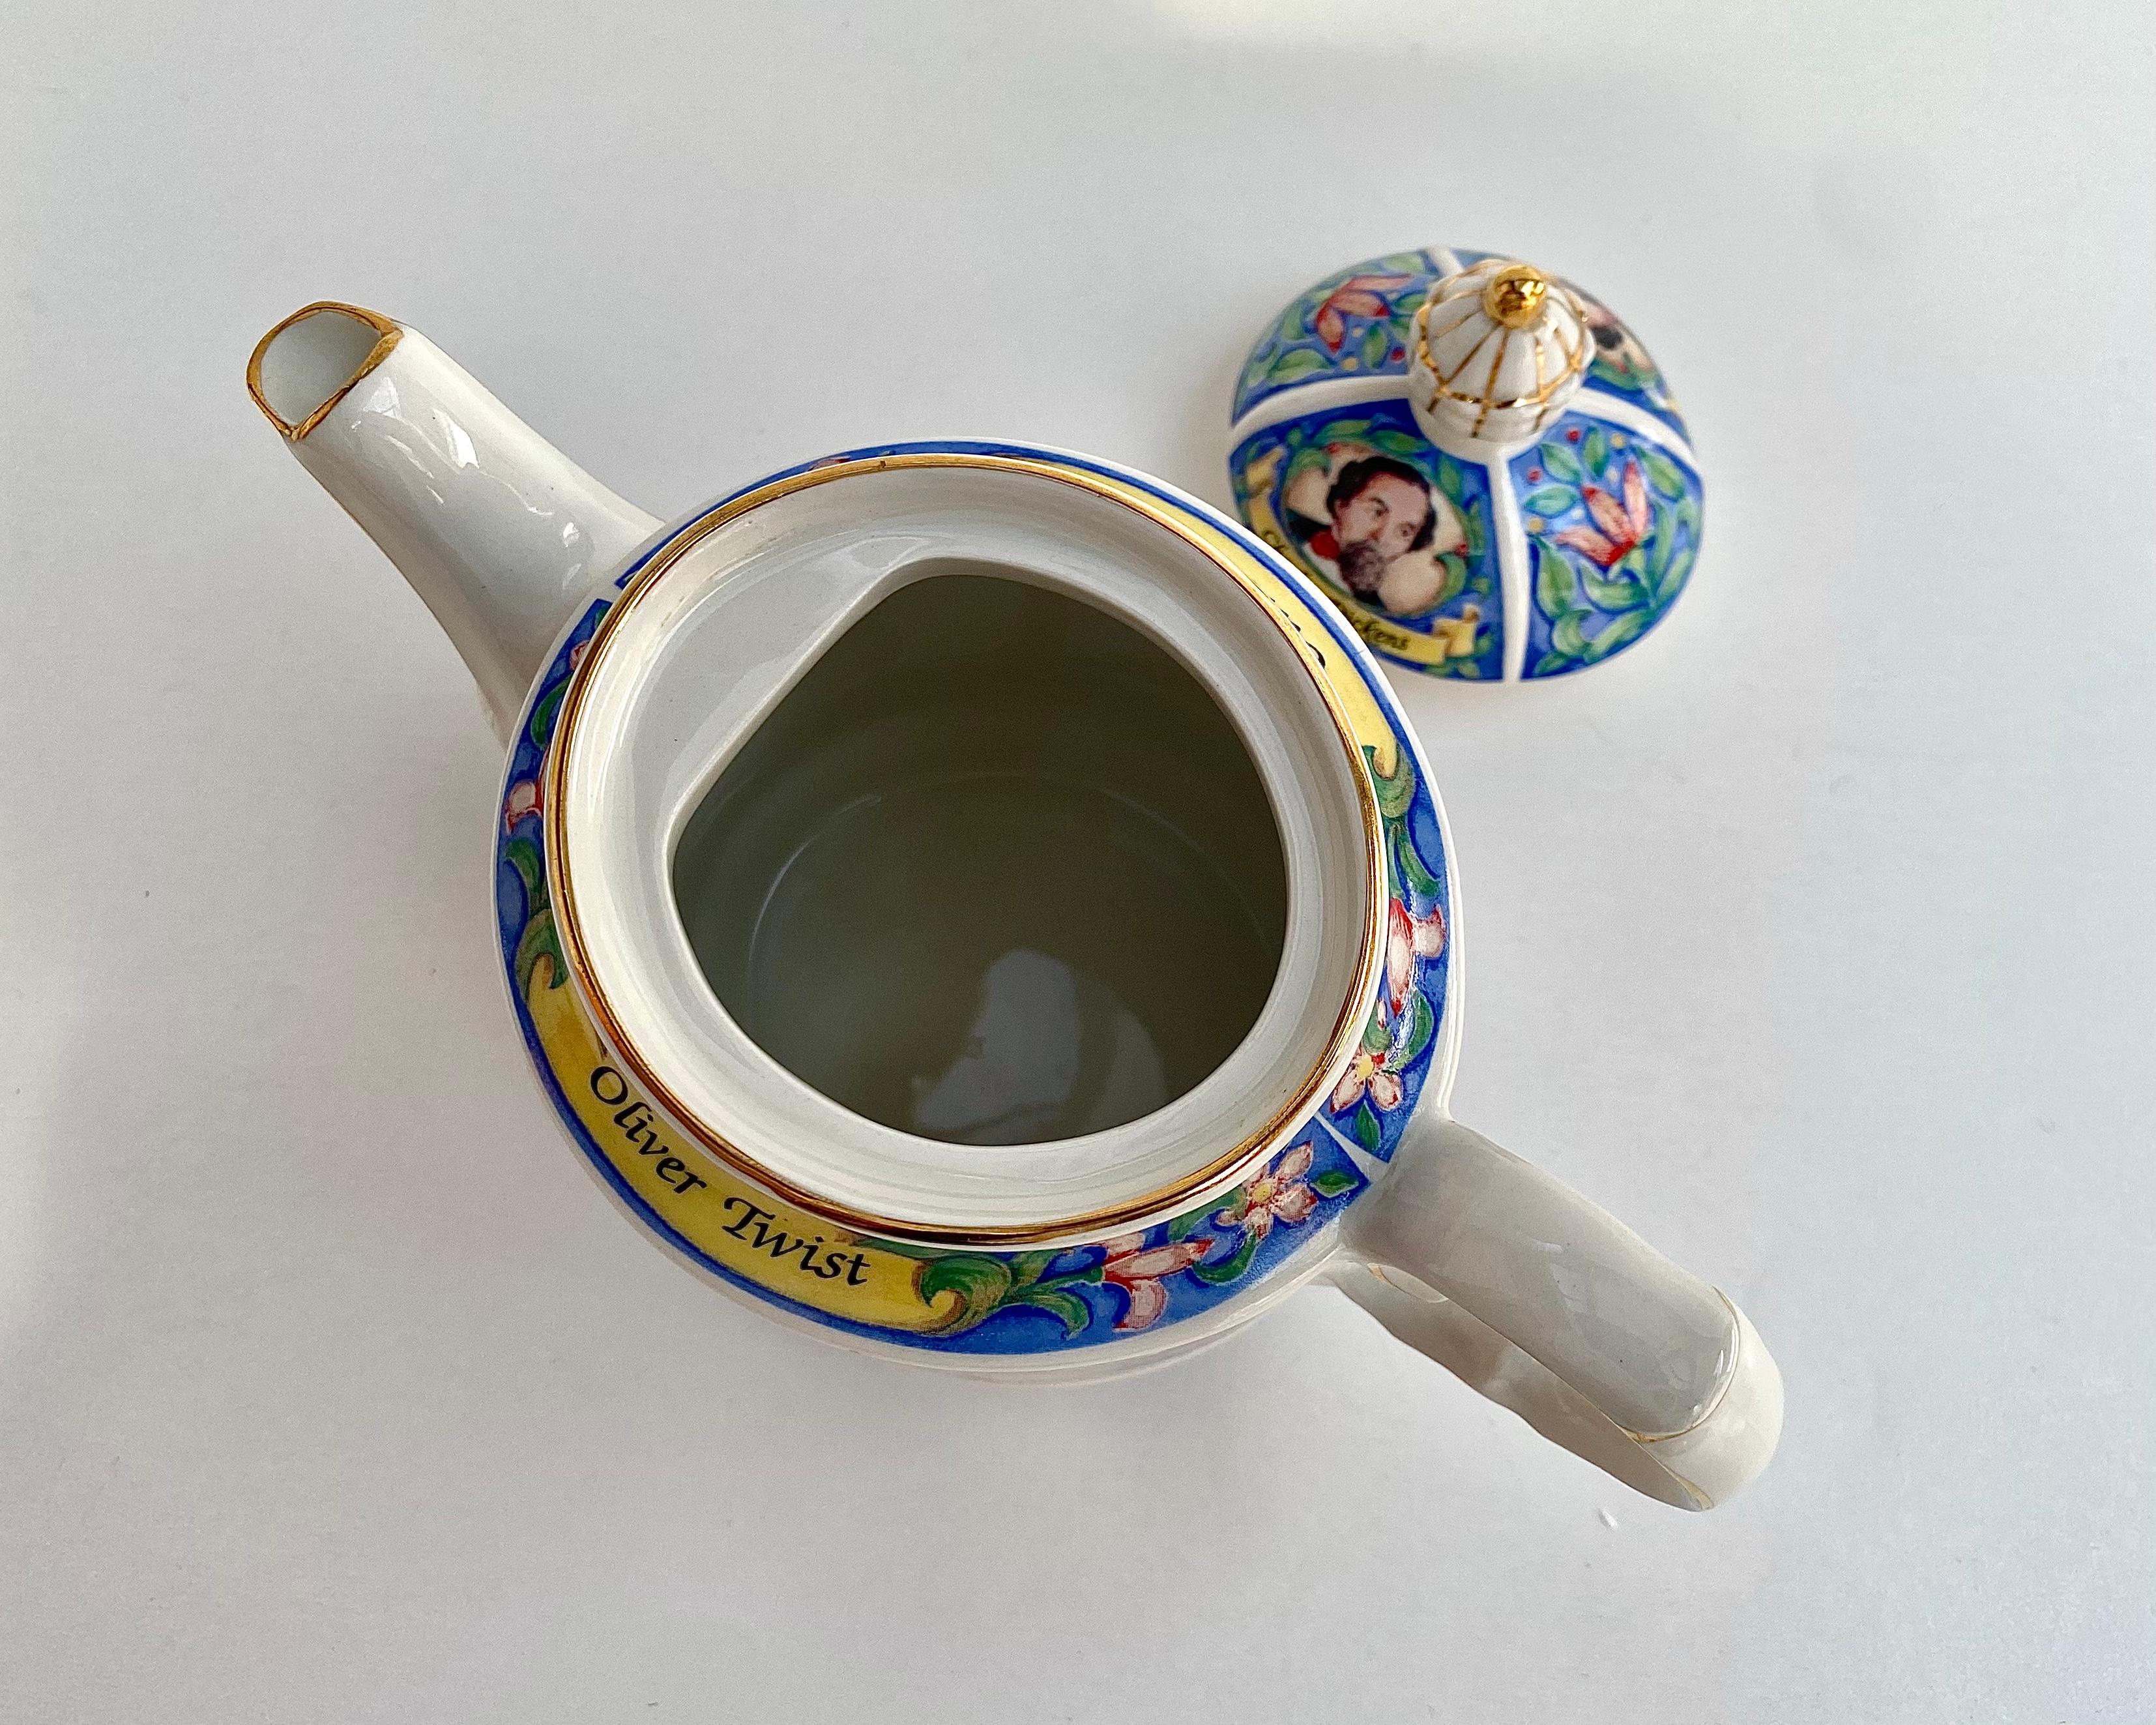 sadler england teapot numbered